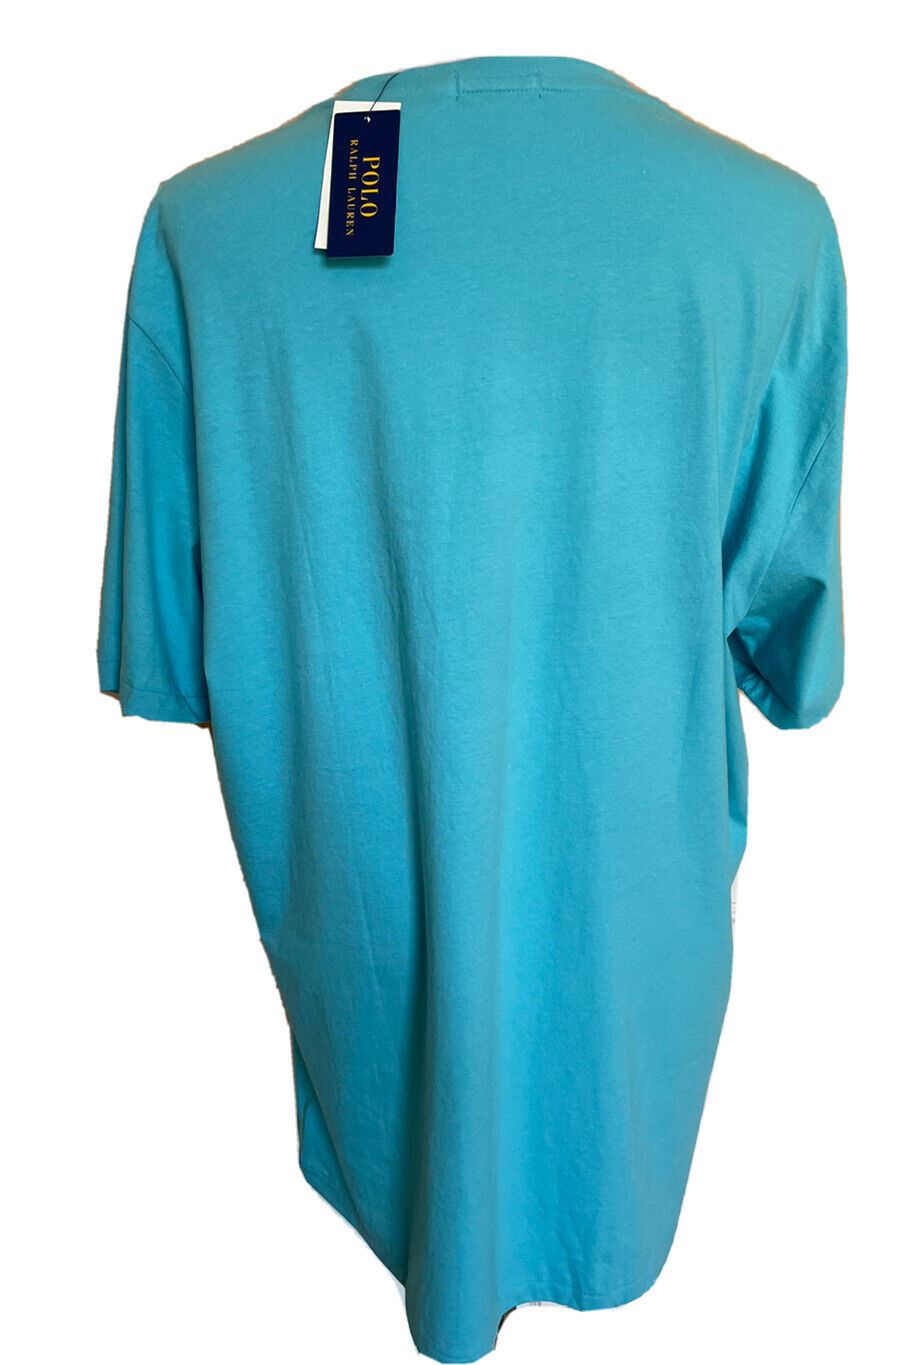 Neu mit Etikett: 69,5 $ Polo Ralph Lauren Bear T-Shirt Türkis XLT/TGL